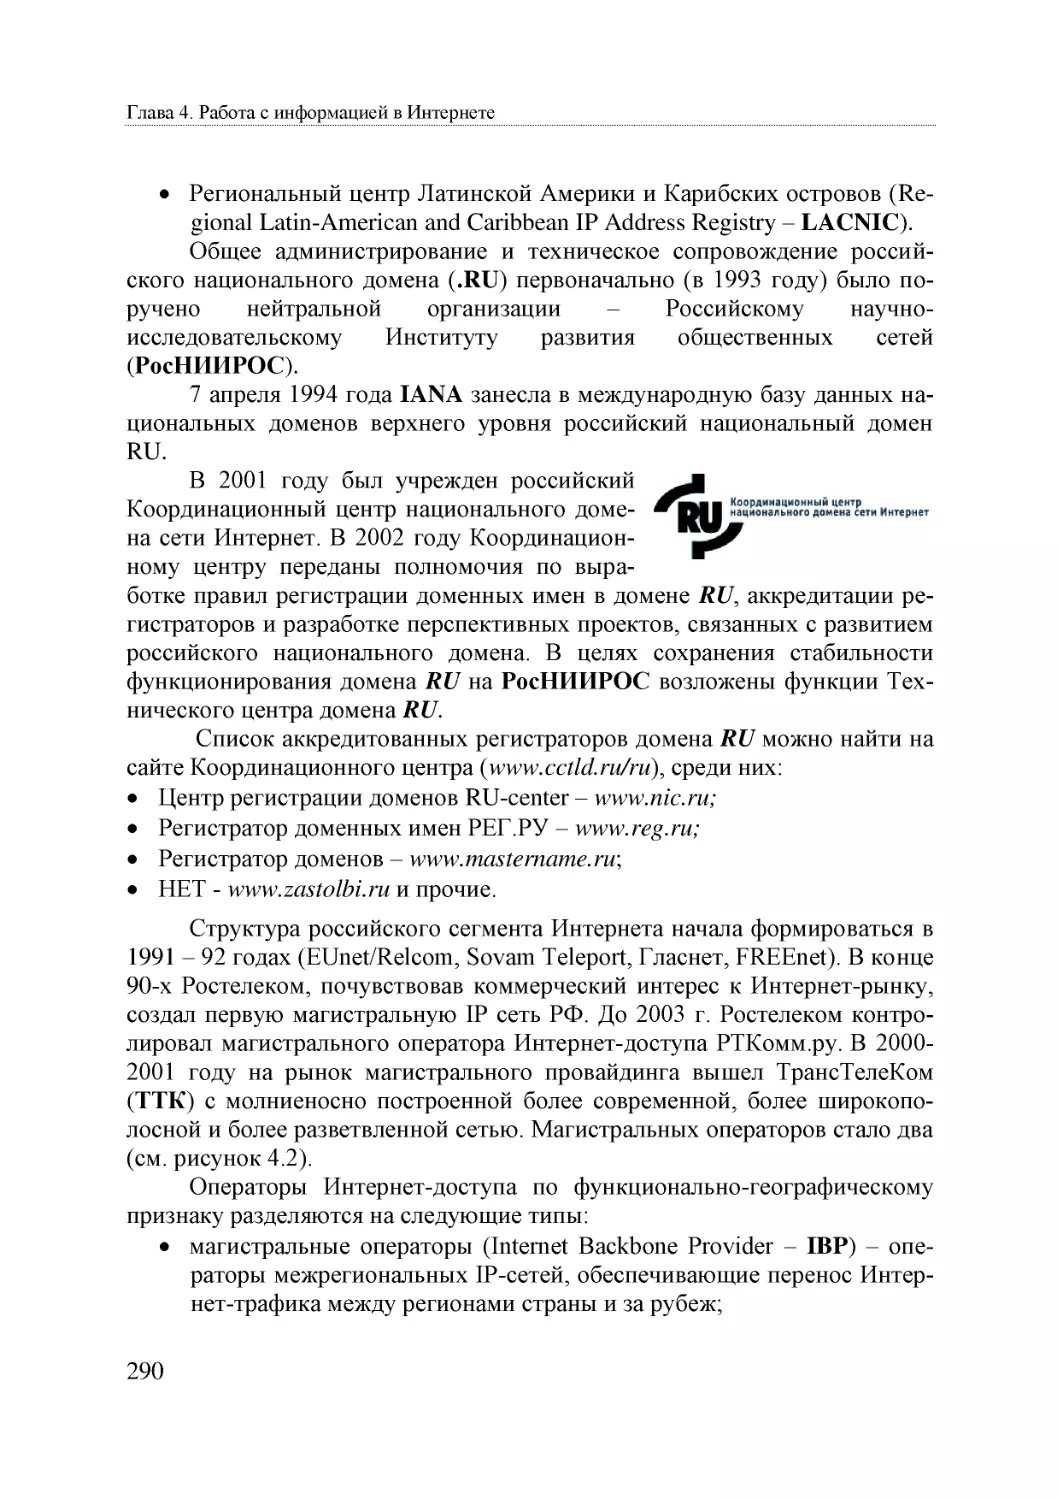 Informatika_Uchebnik_dlya_vuzov_2010 290